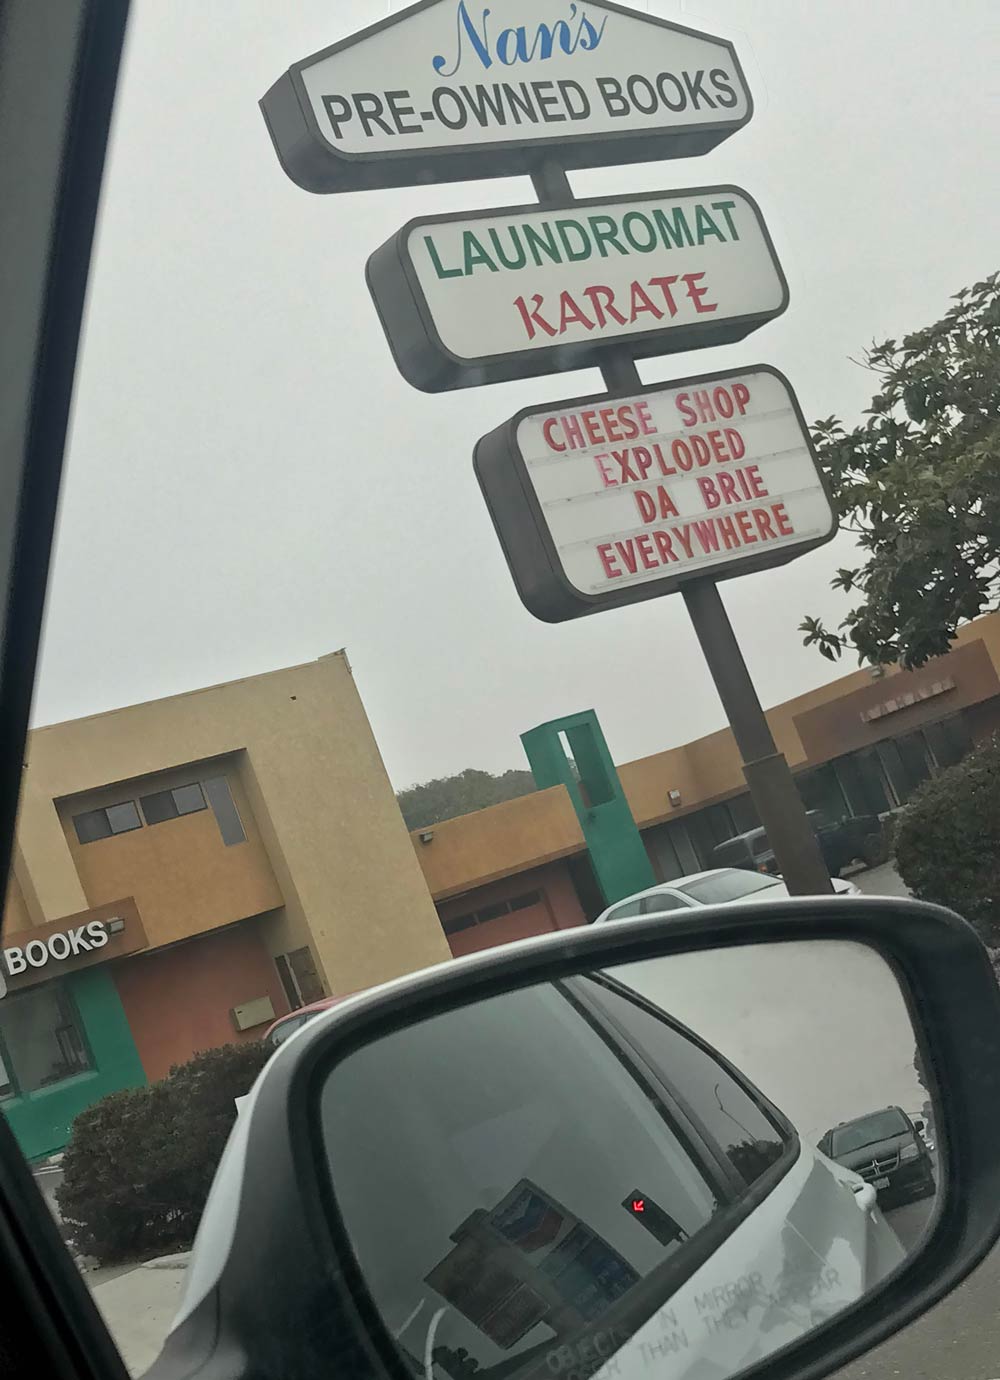 Laundromat karate sounds fun